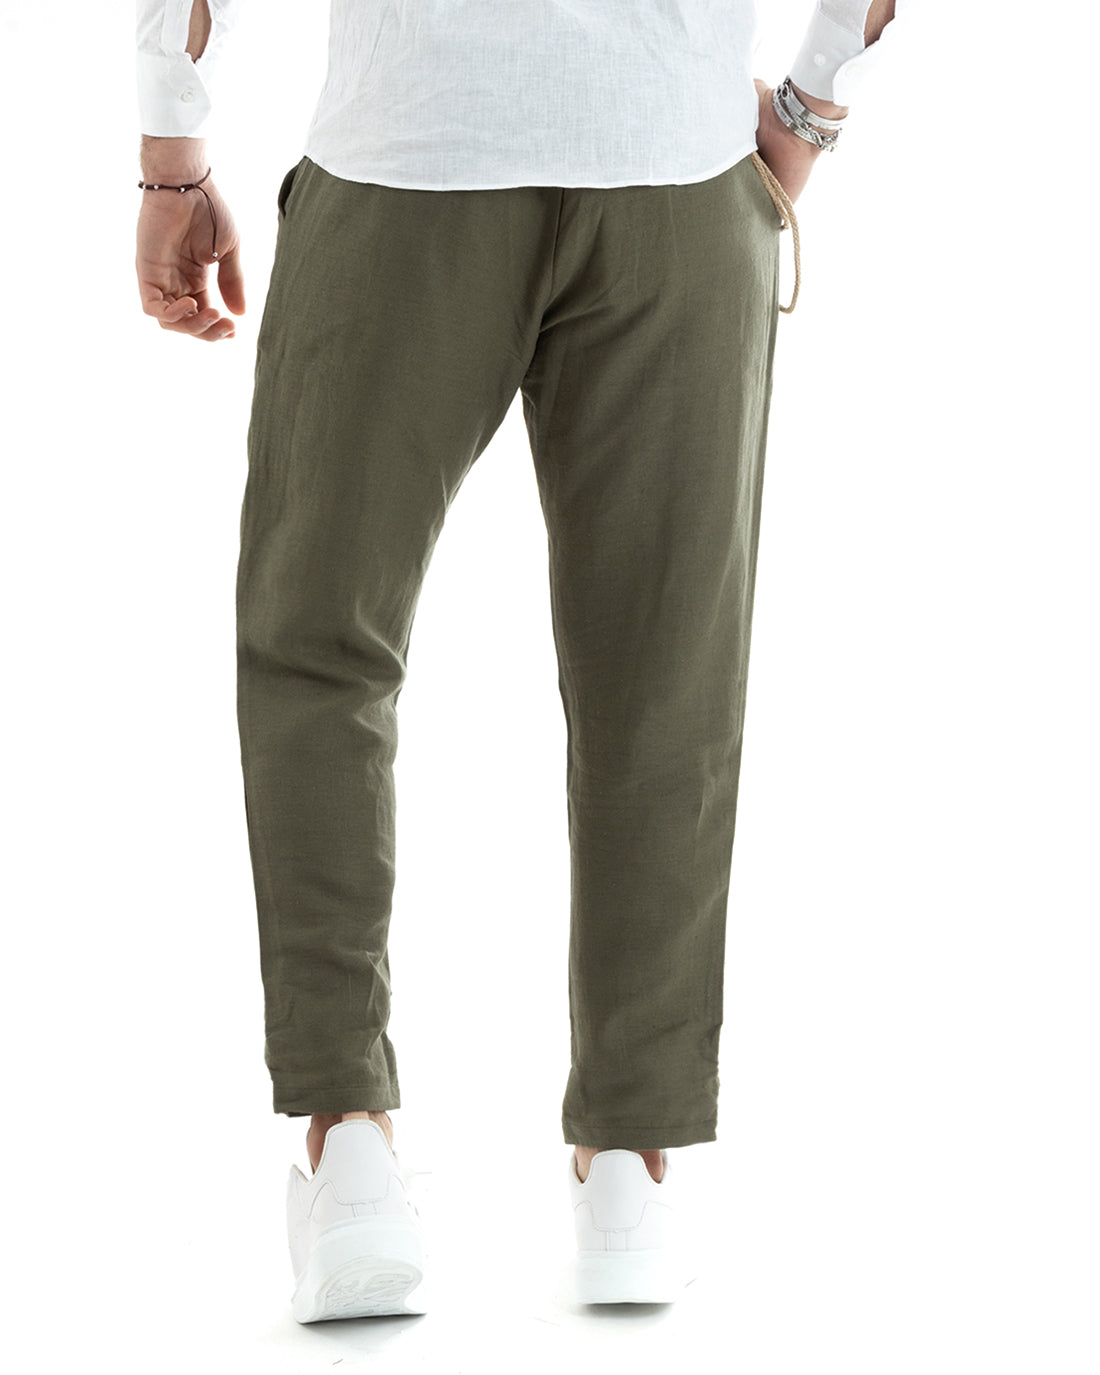 Pantaloni Uomo In Lino Tasca America Classico Sartoriale Comodo Casual Tinta Unita Verde Scuro GIOSAL-P5857A